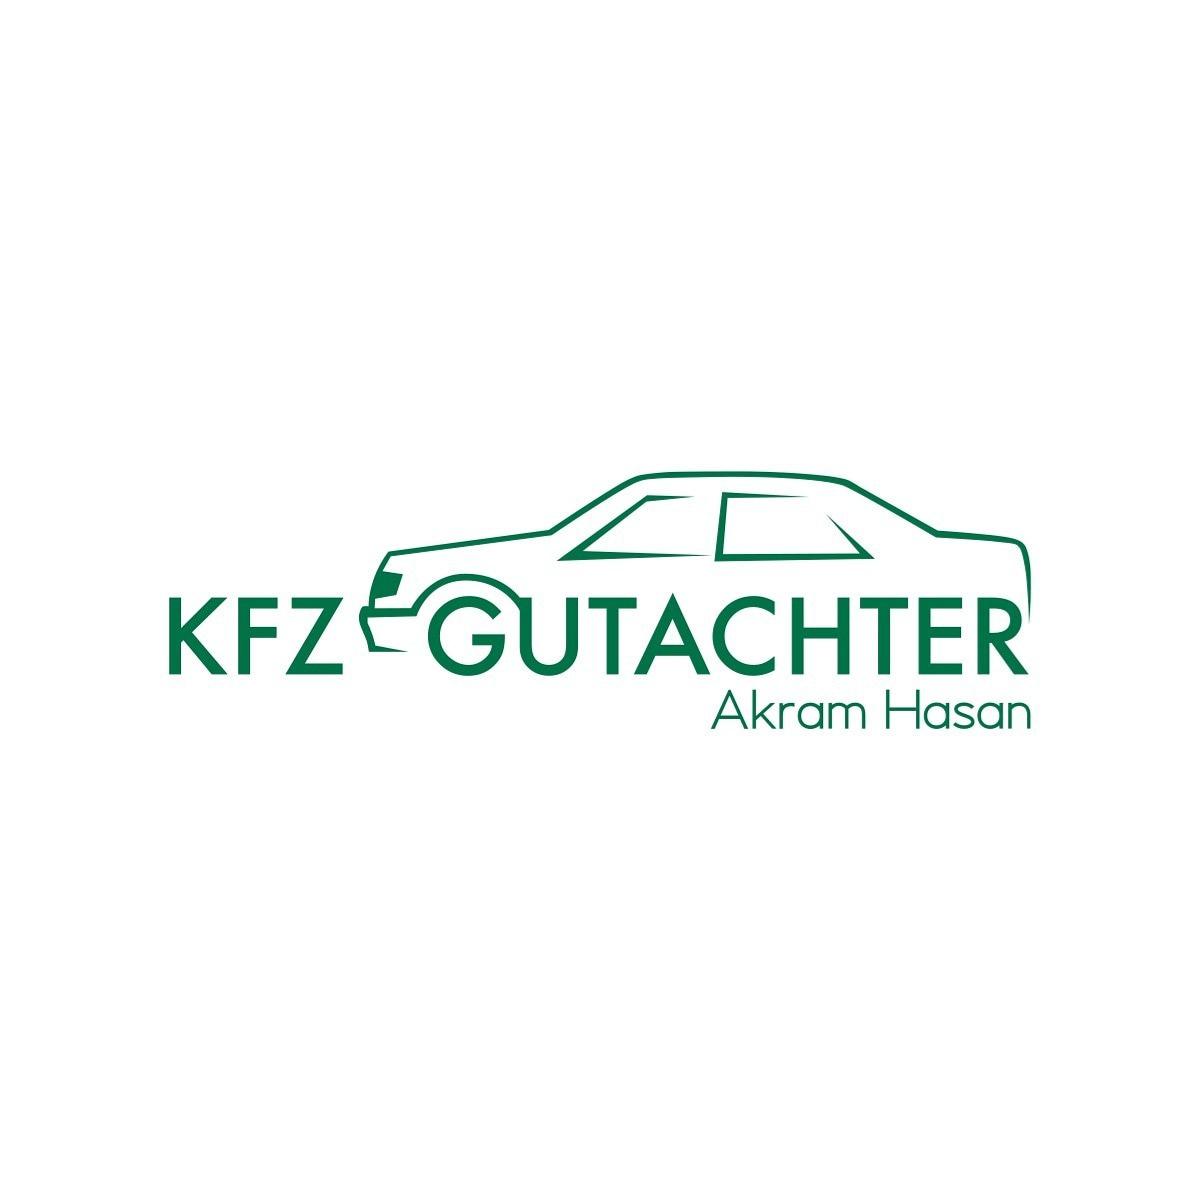 Logo Kfz-Gutachter Akram Hasan